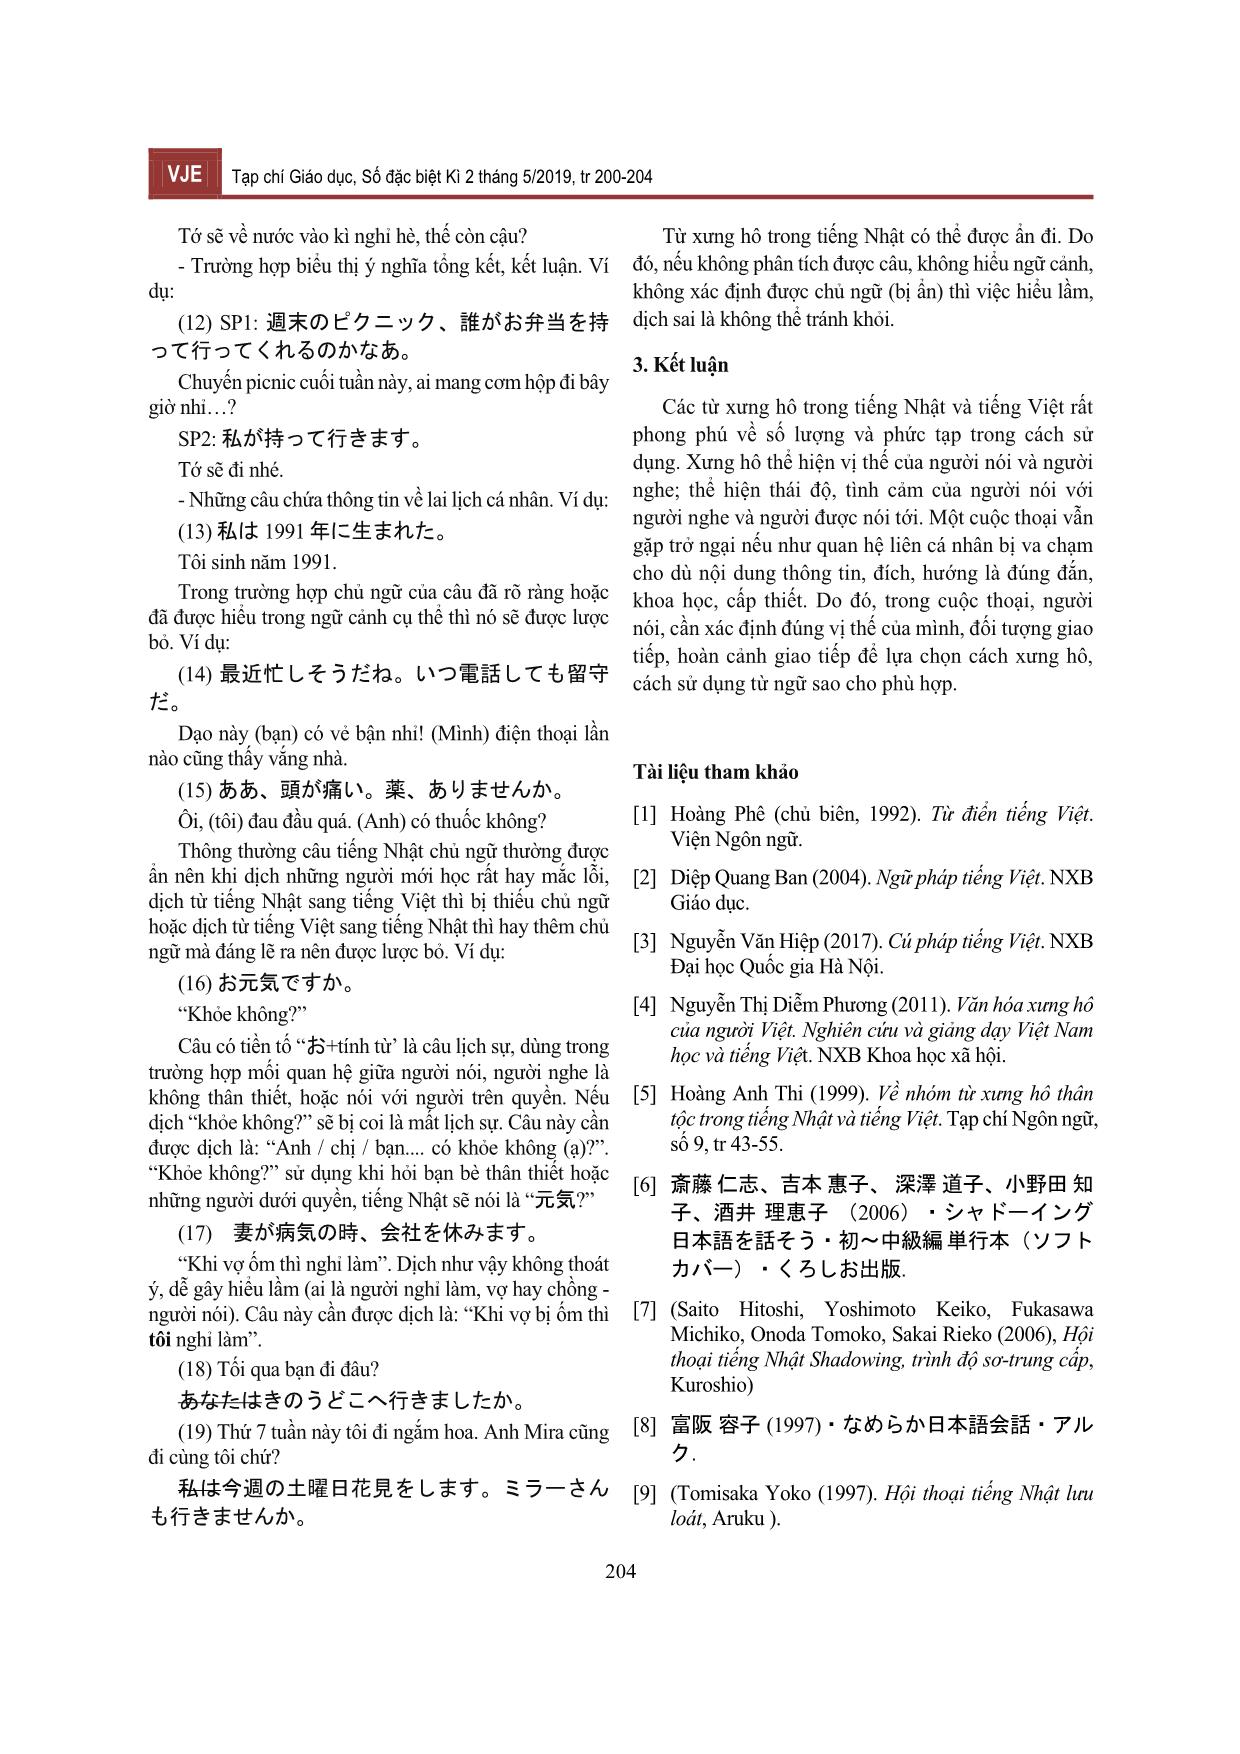 Đặc điểm sử dụng từ xưng hô trong tiếng Nhật và so sánh với đơn vị tương đương trong tiếng Việt trang 5